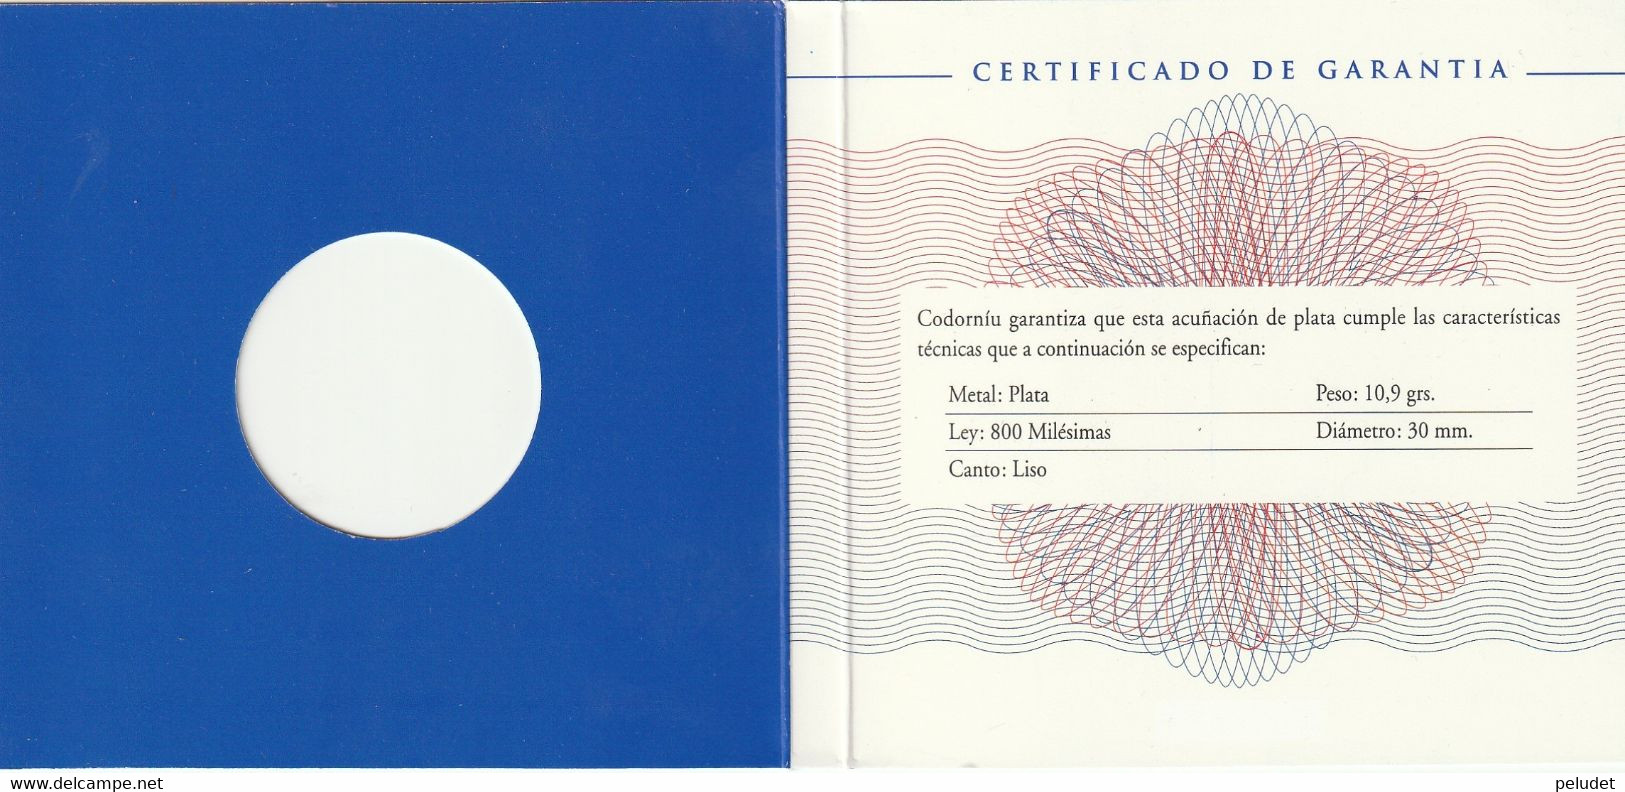 Europa, Medalla Medaille Medal, Enero 1999, Codorniu, 1, Con Certificado De Garantia, With Warranty Certificate - Professionali/Di Società